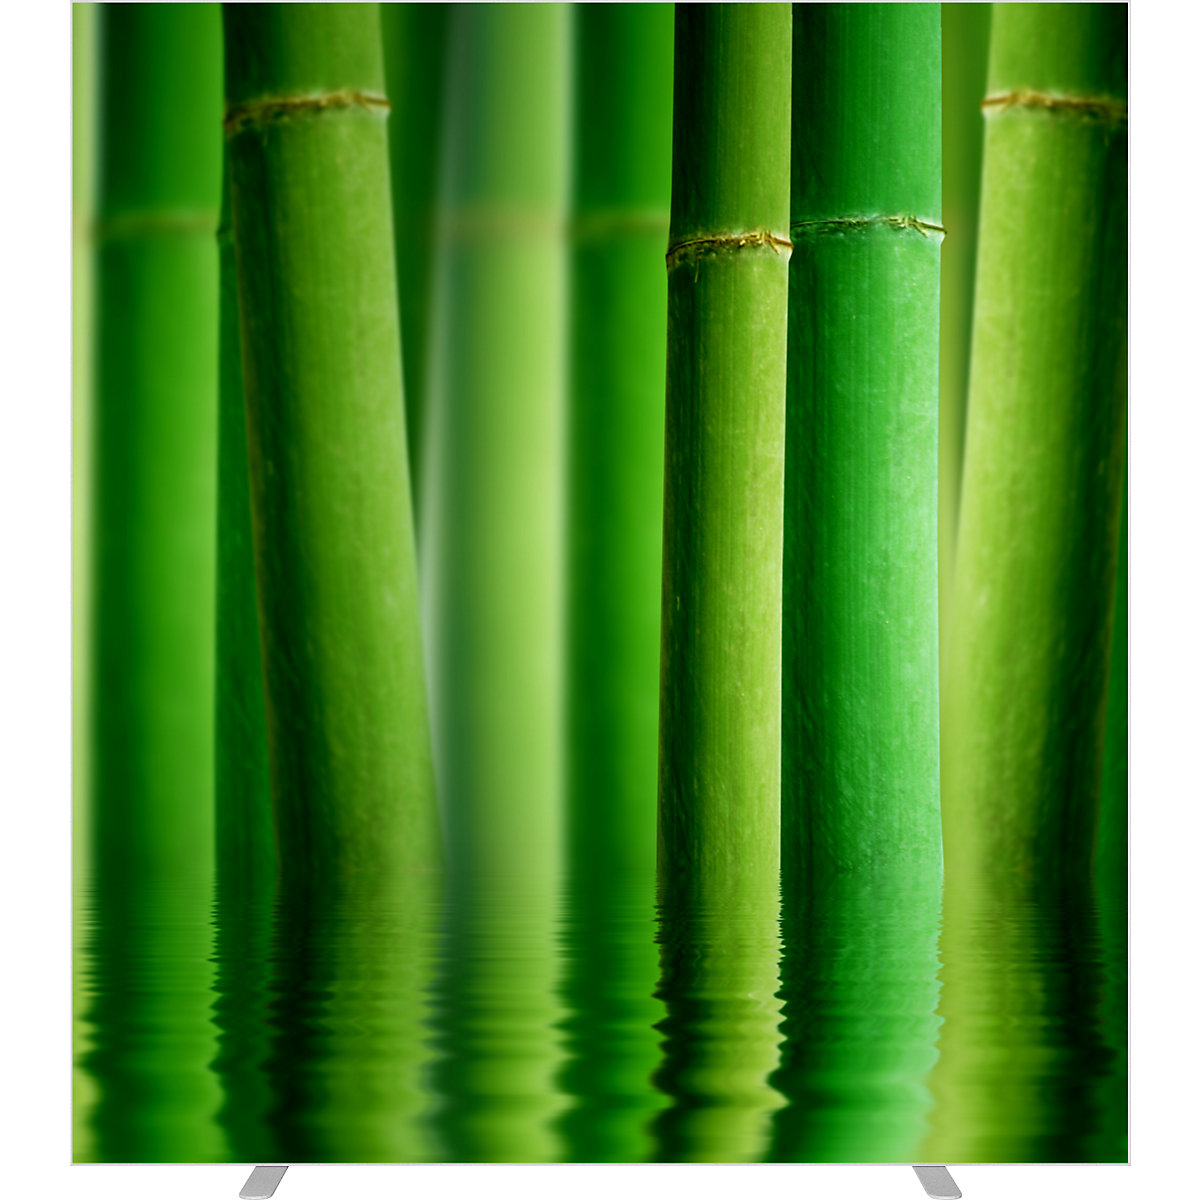 easyScreen válaszfal, fényképmotívummal, bambusz modell, szélesség 1600 mm